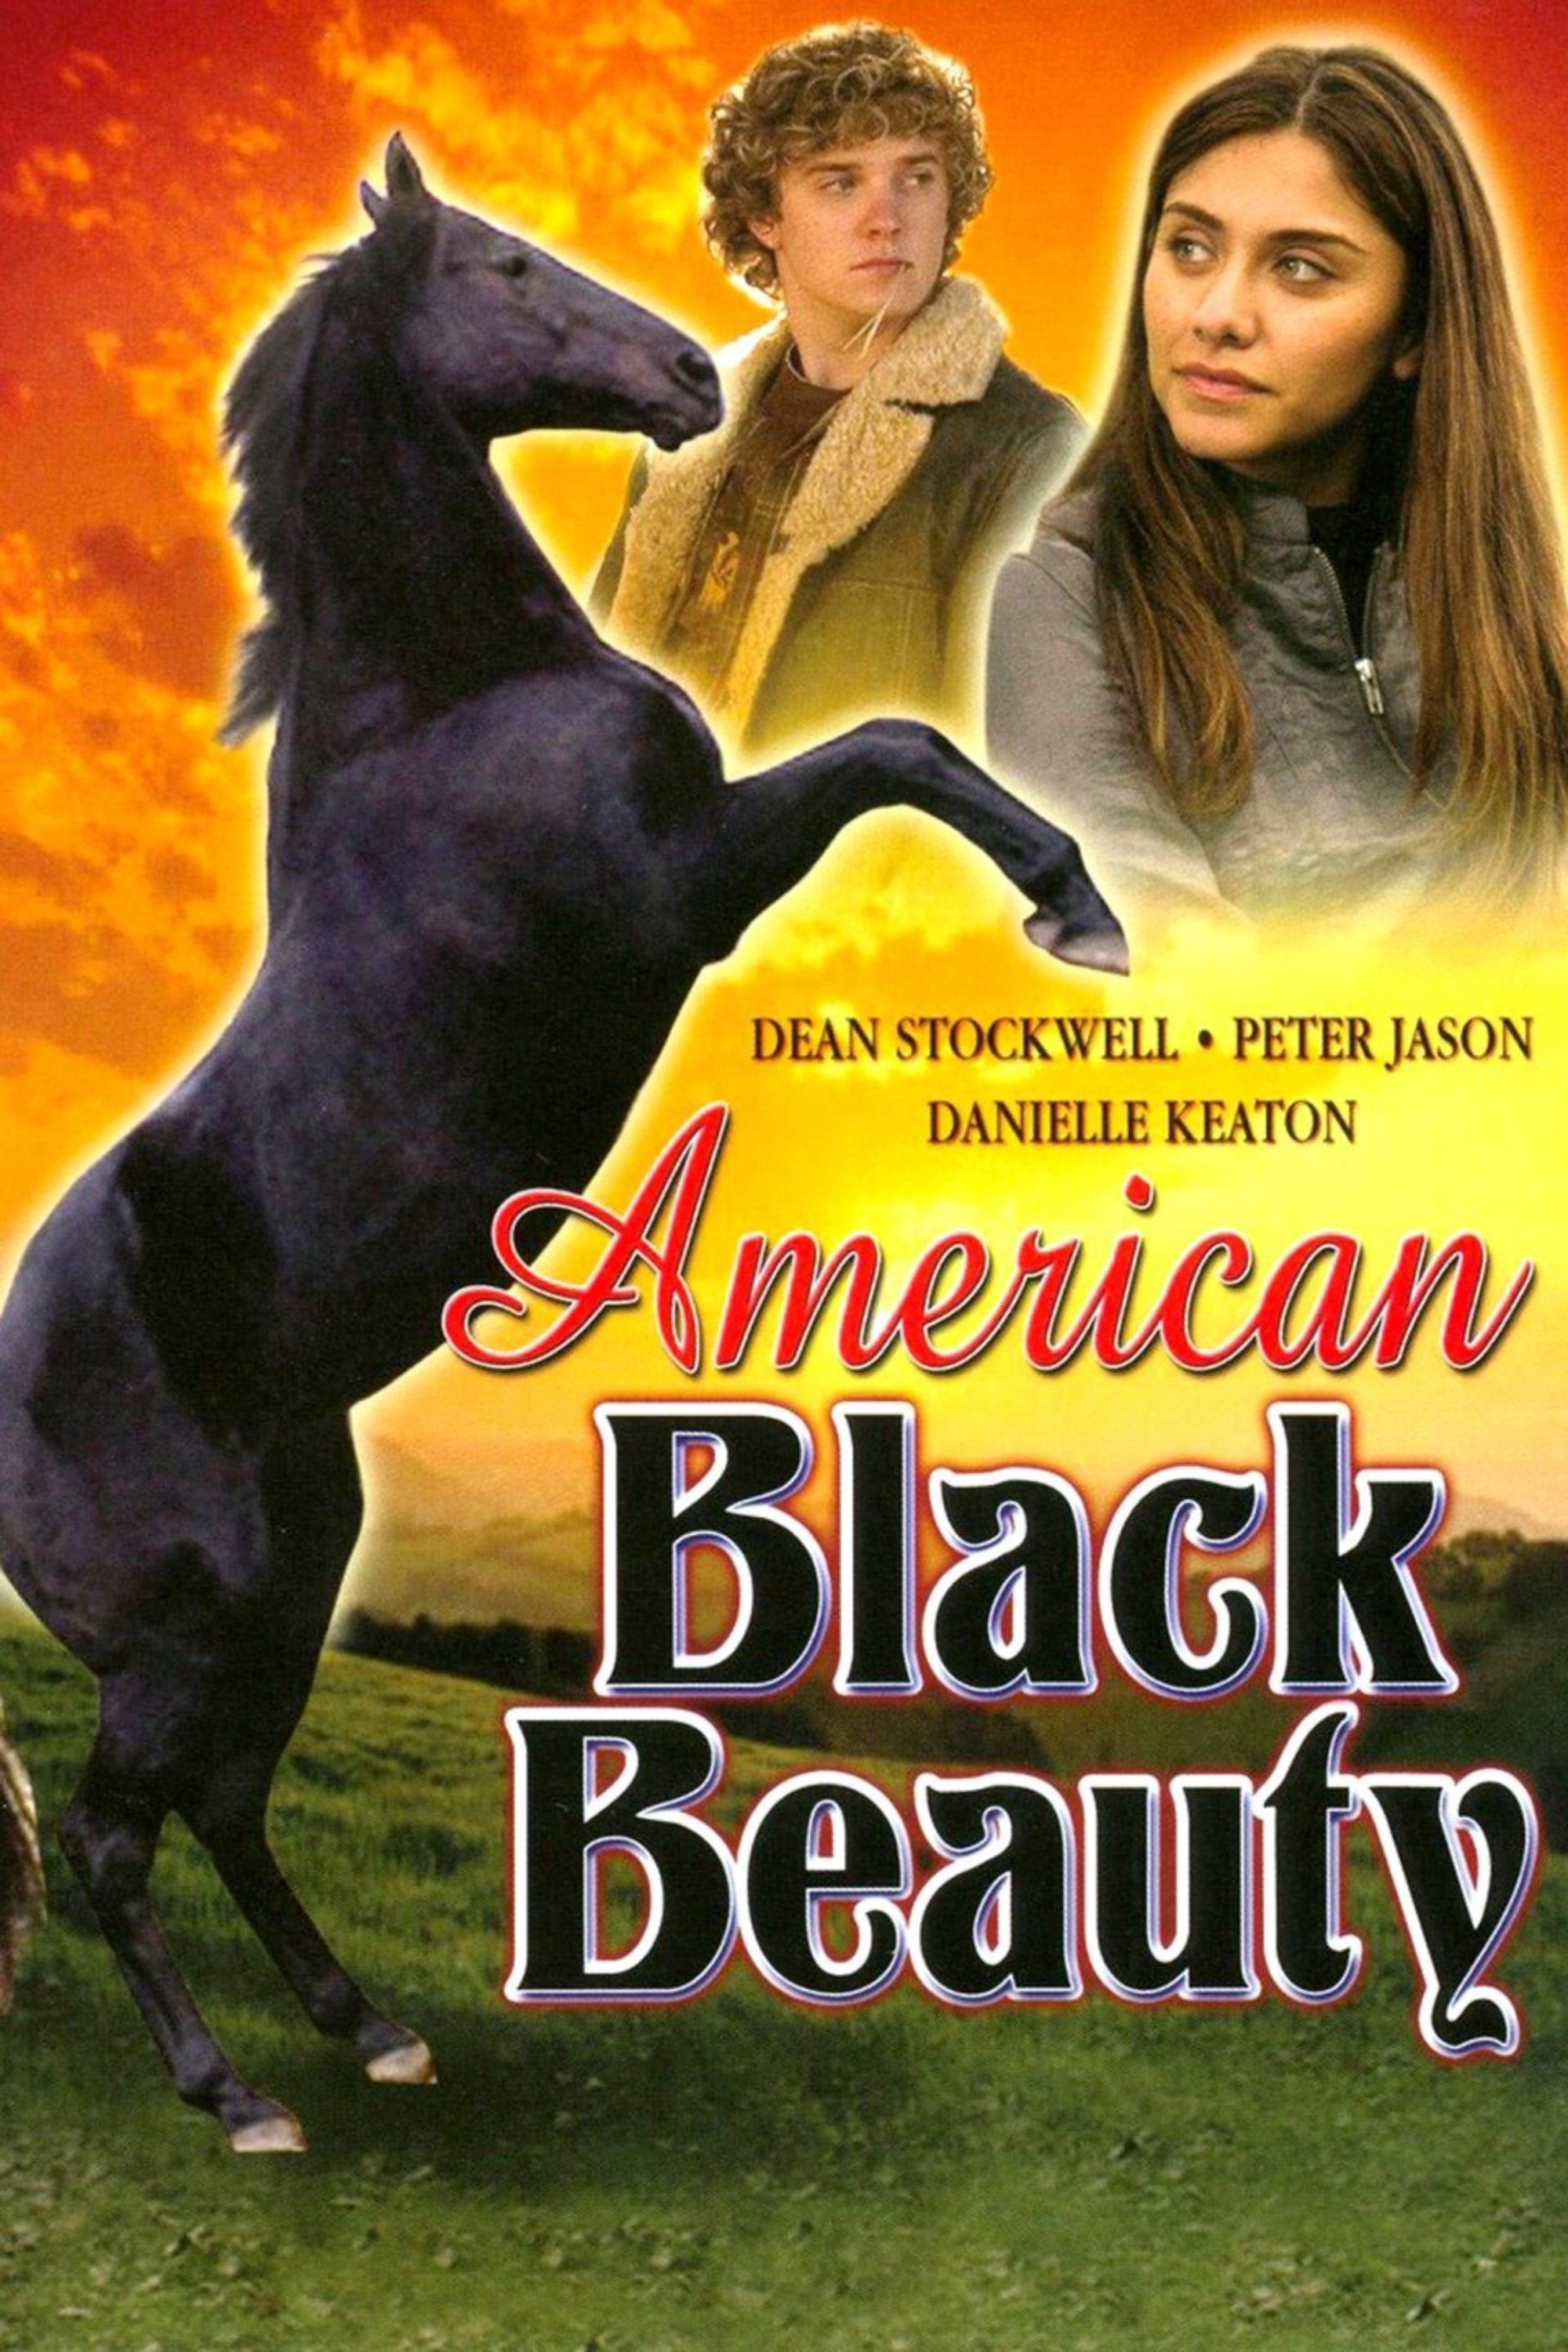 Black Beauty - Die Legende lebt weiter (2005)